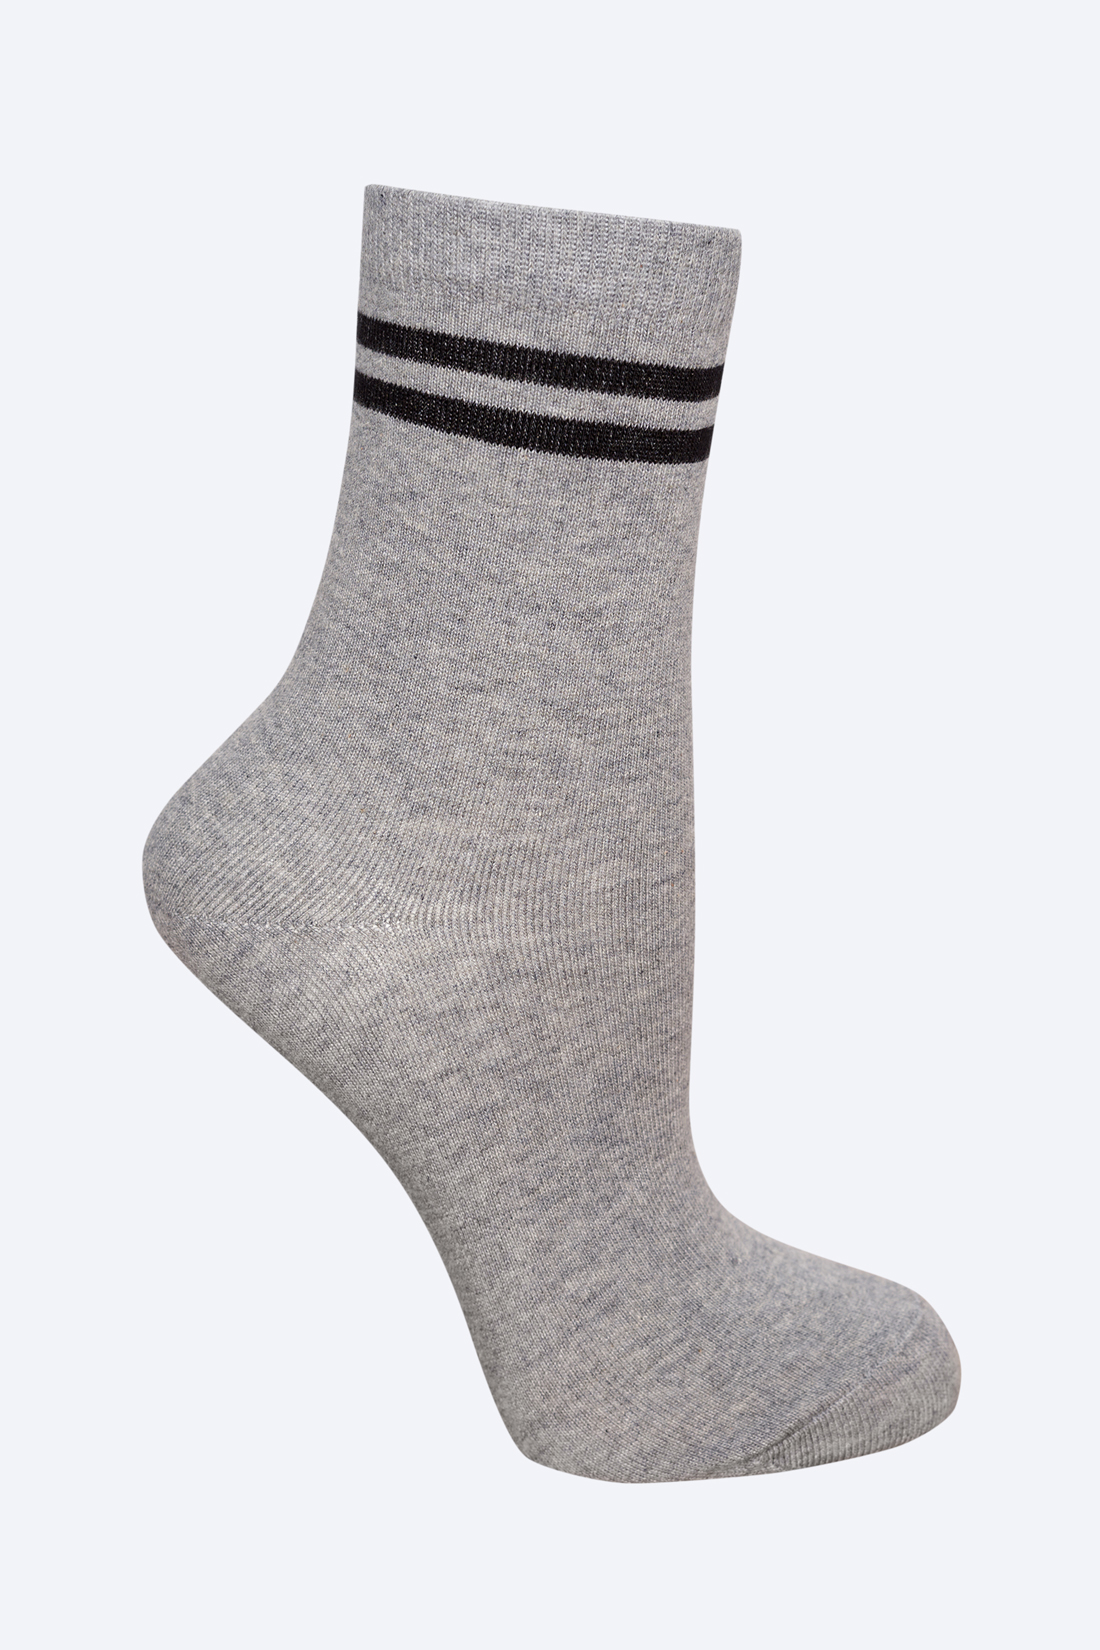 Носки с чёрными полосками (арт. baon B399525), размер 38/40, цвет zircon melange#серый Носки с чёрными полосками (арт. baon B399525) - фото 1